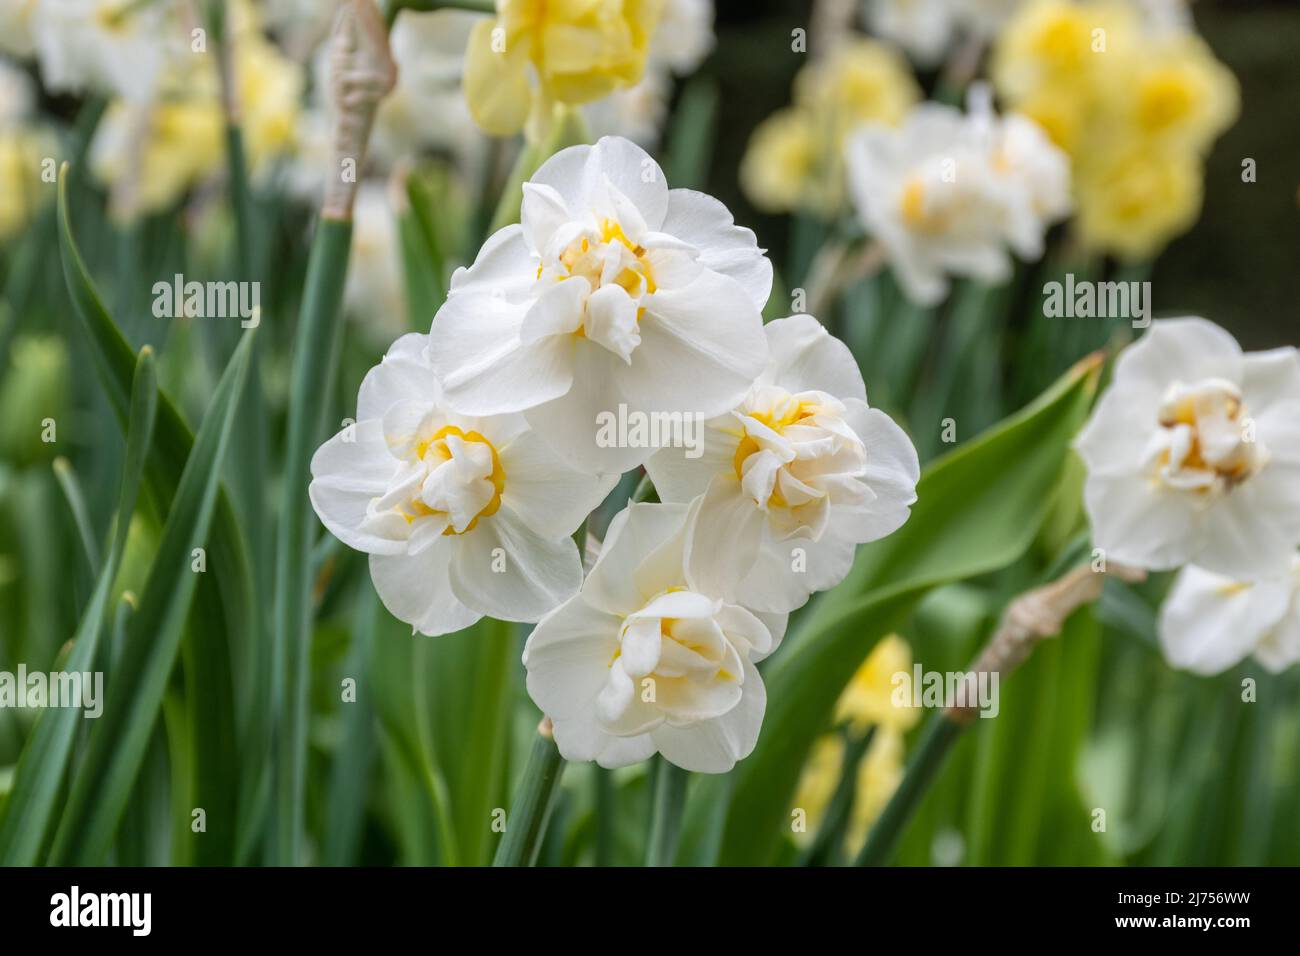 Narcisse 'gaieté', jonquille blanc-crème à fleurs tardives avec grappes de fleurs Banque D'Images